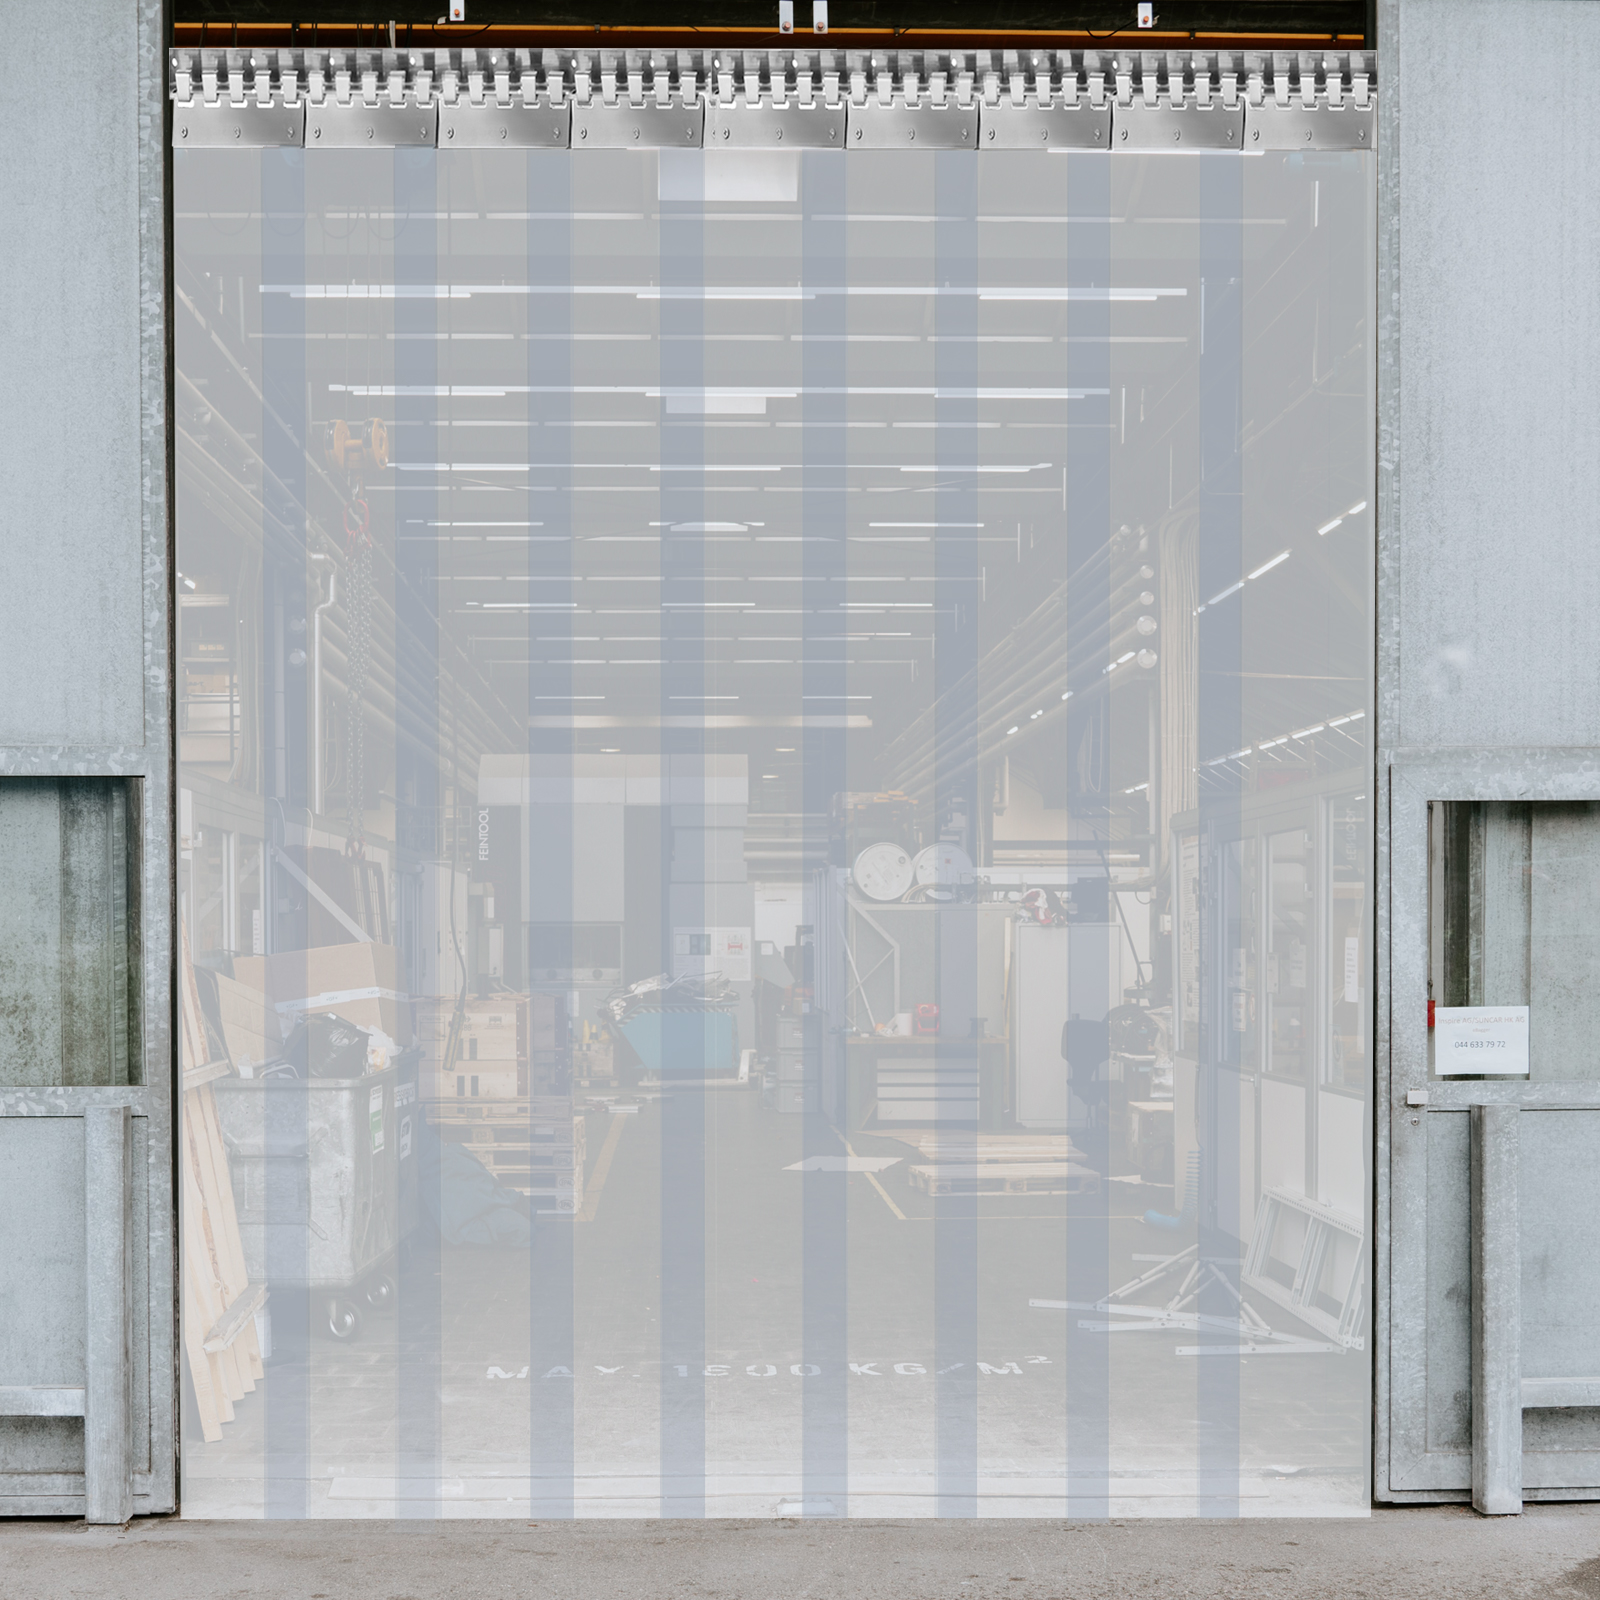  GGYMEI - Cortina de tiras de PVC, persianas verticales, panel  de puerta del congelador, cortina de división resistente al viento con riel  de montaje (color blanco, tamaño: 3.4 x 6.9 ft/7